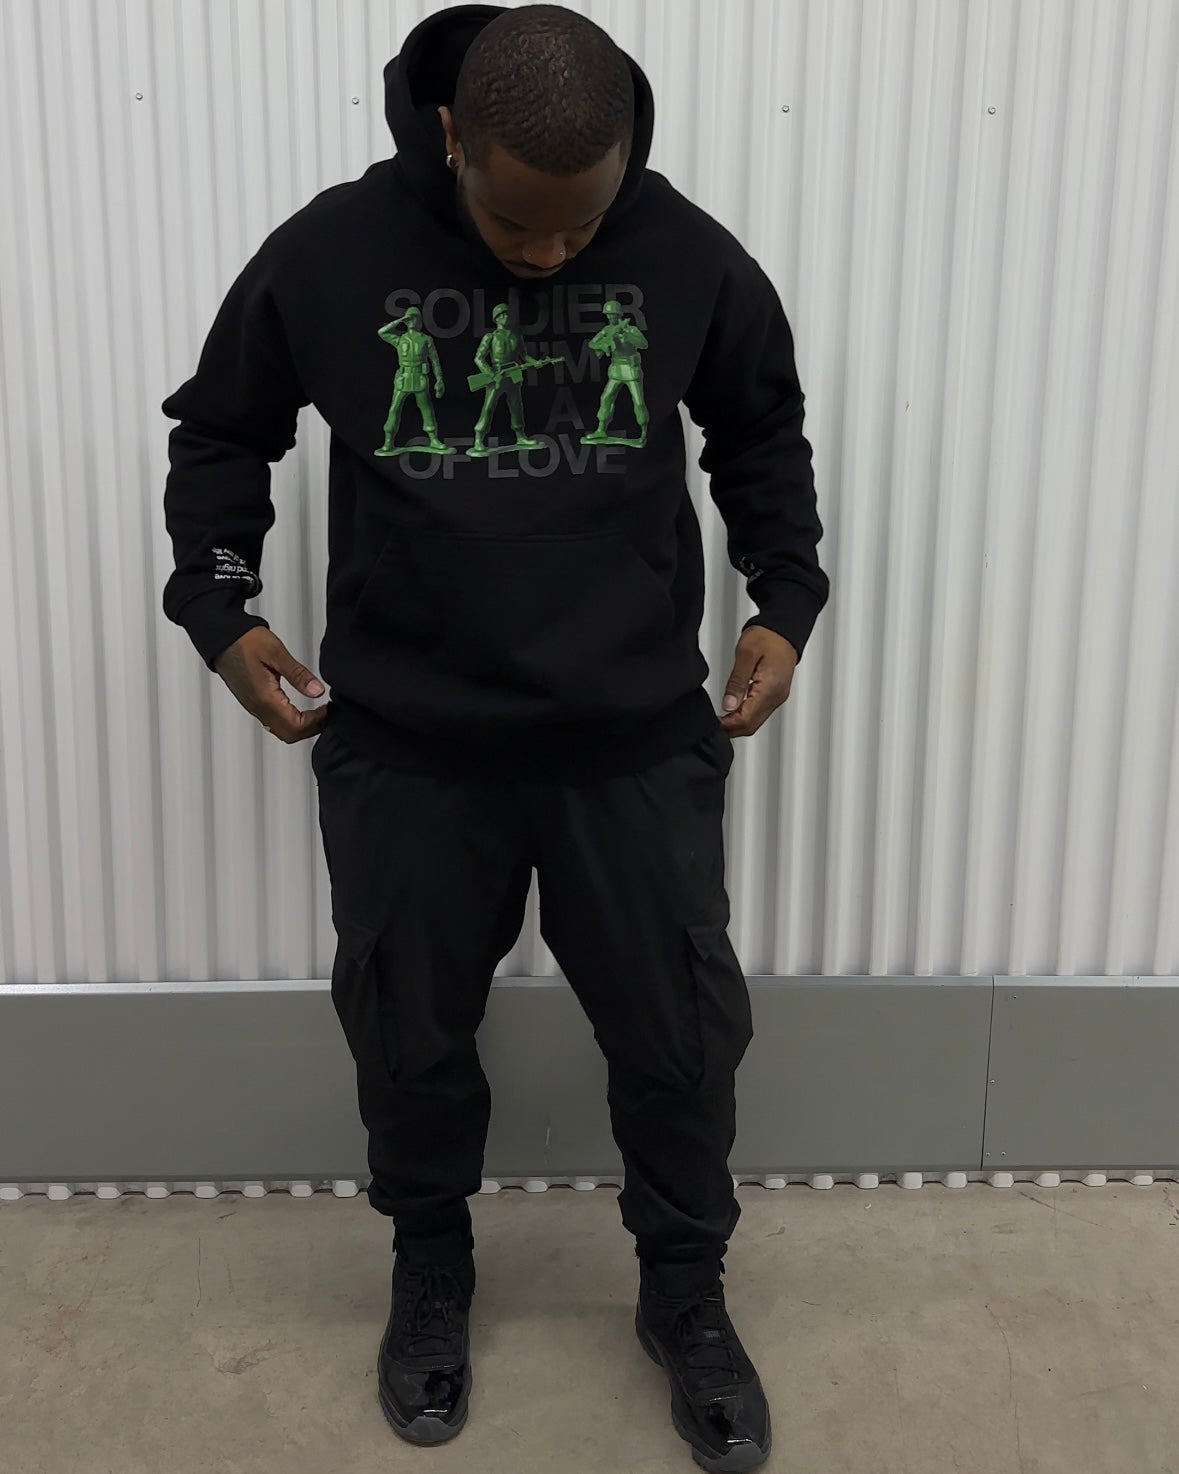 Black man in black oversized hoodie THisLIFE